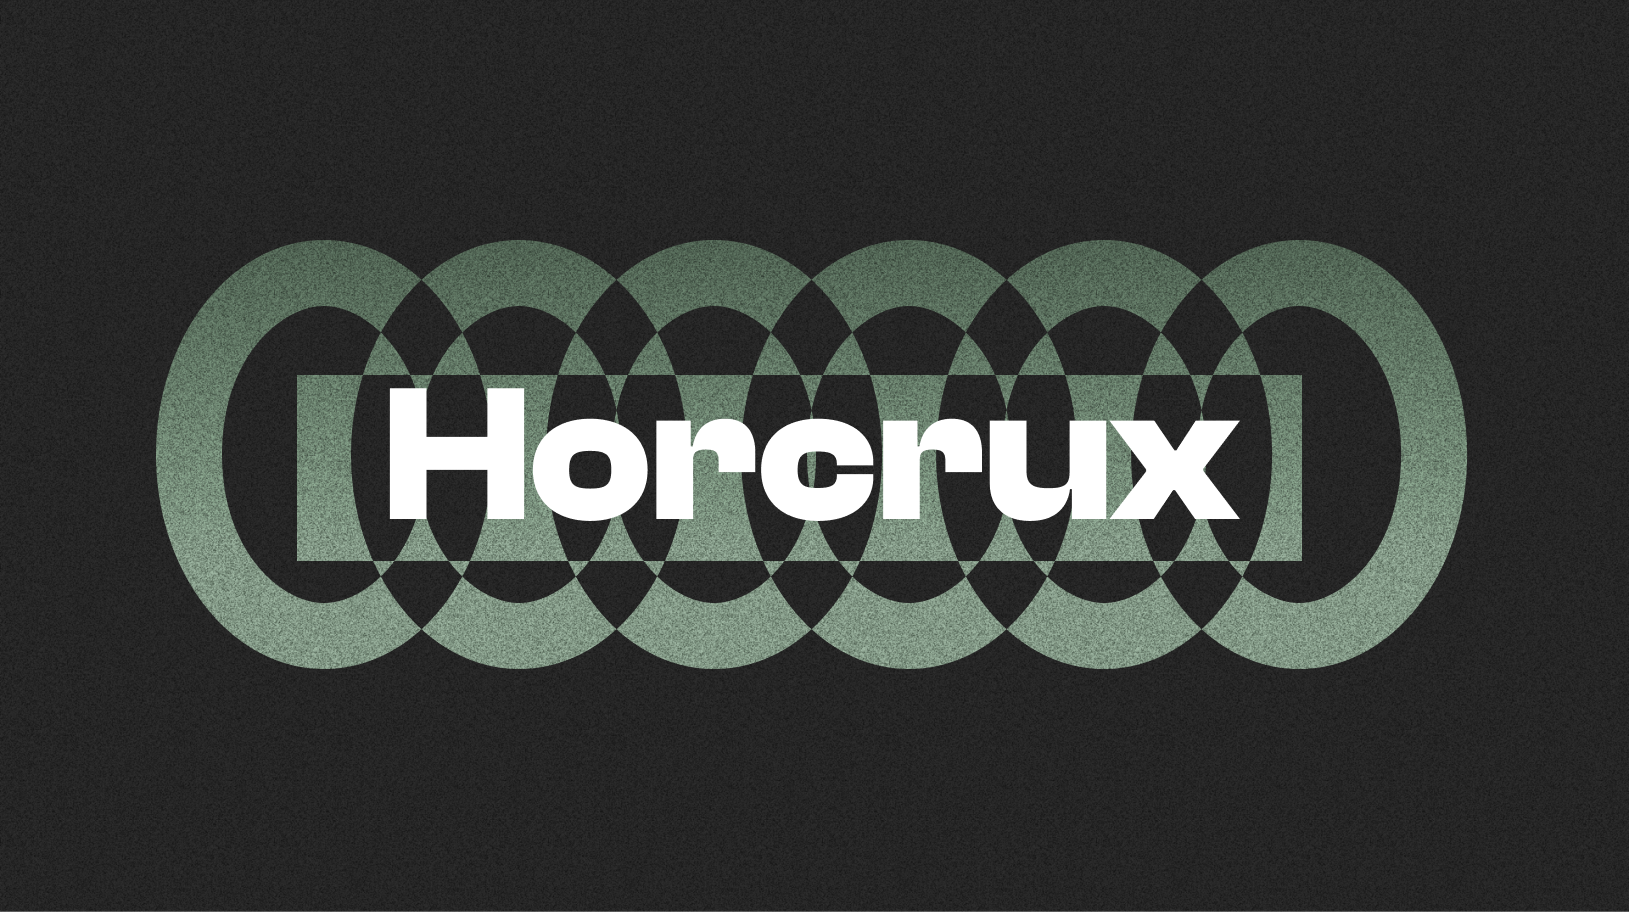 Horcrux v3.2 released